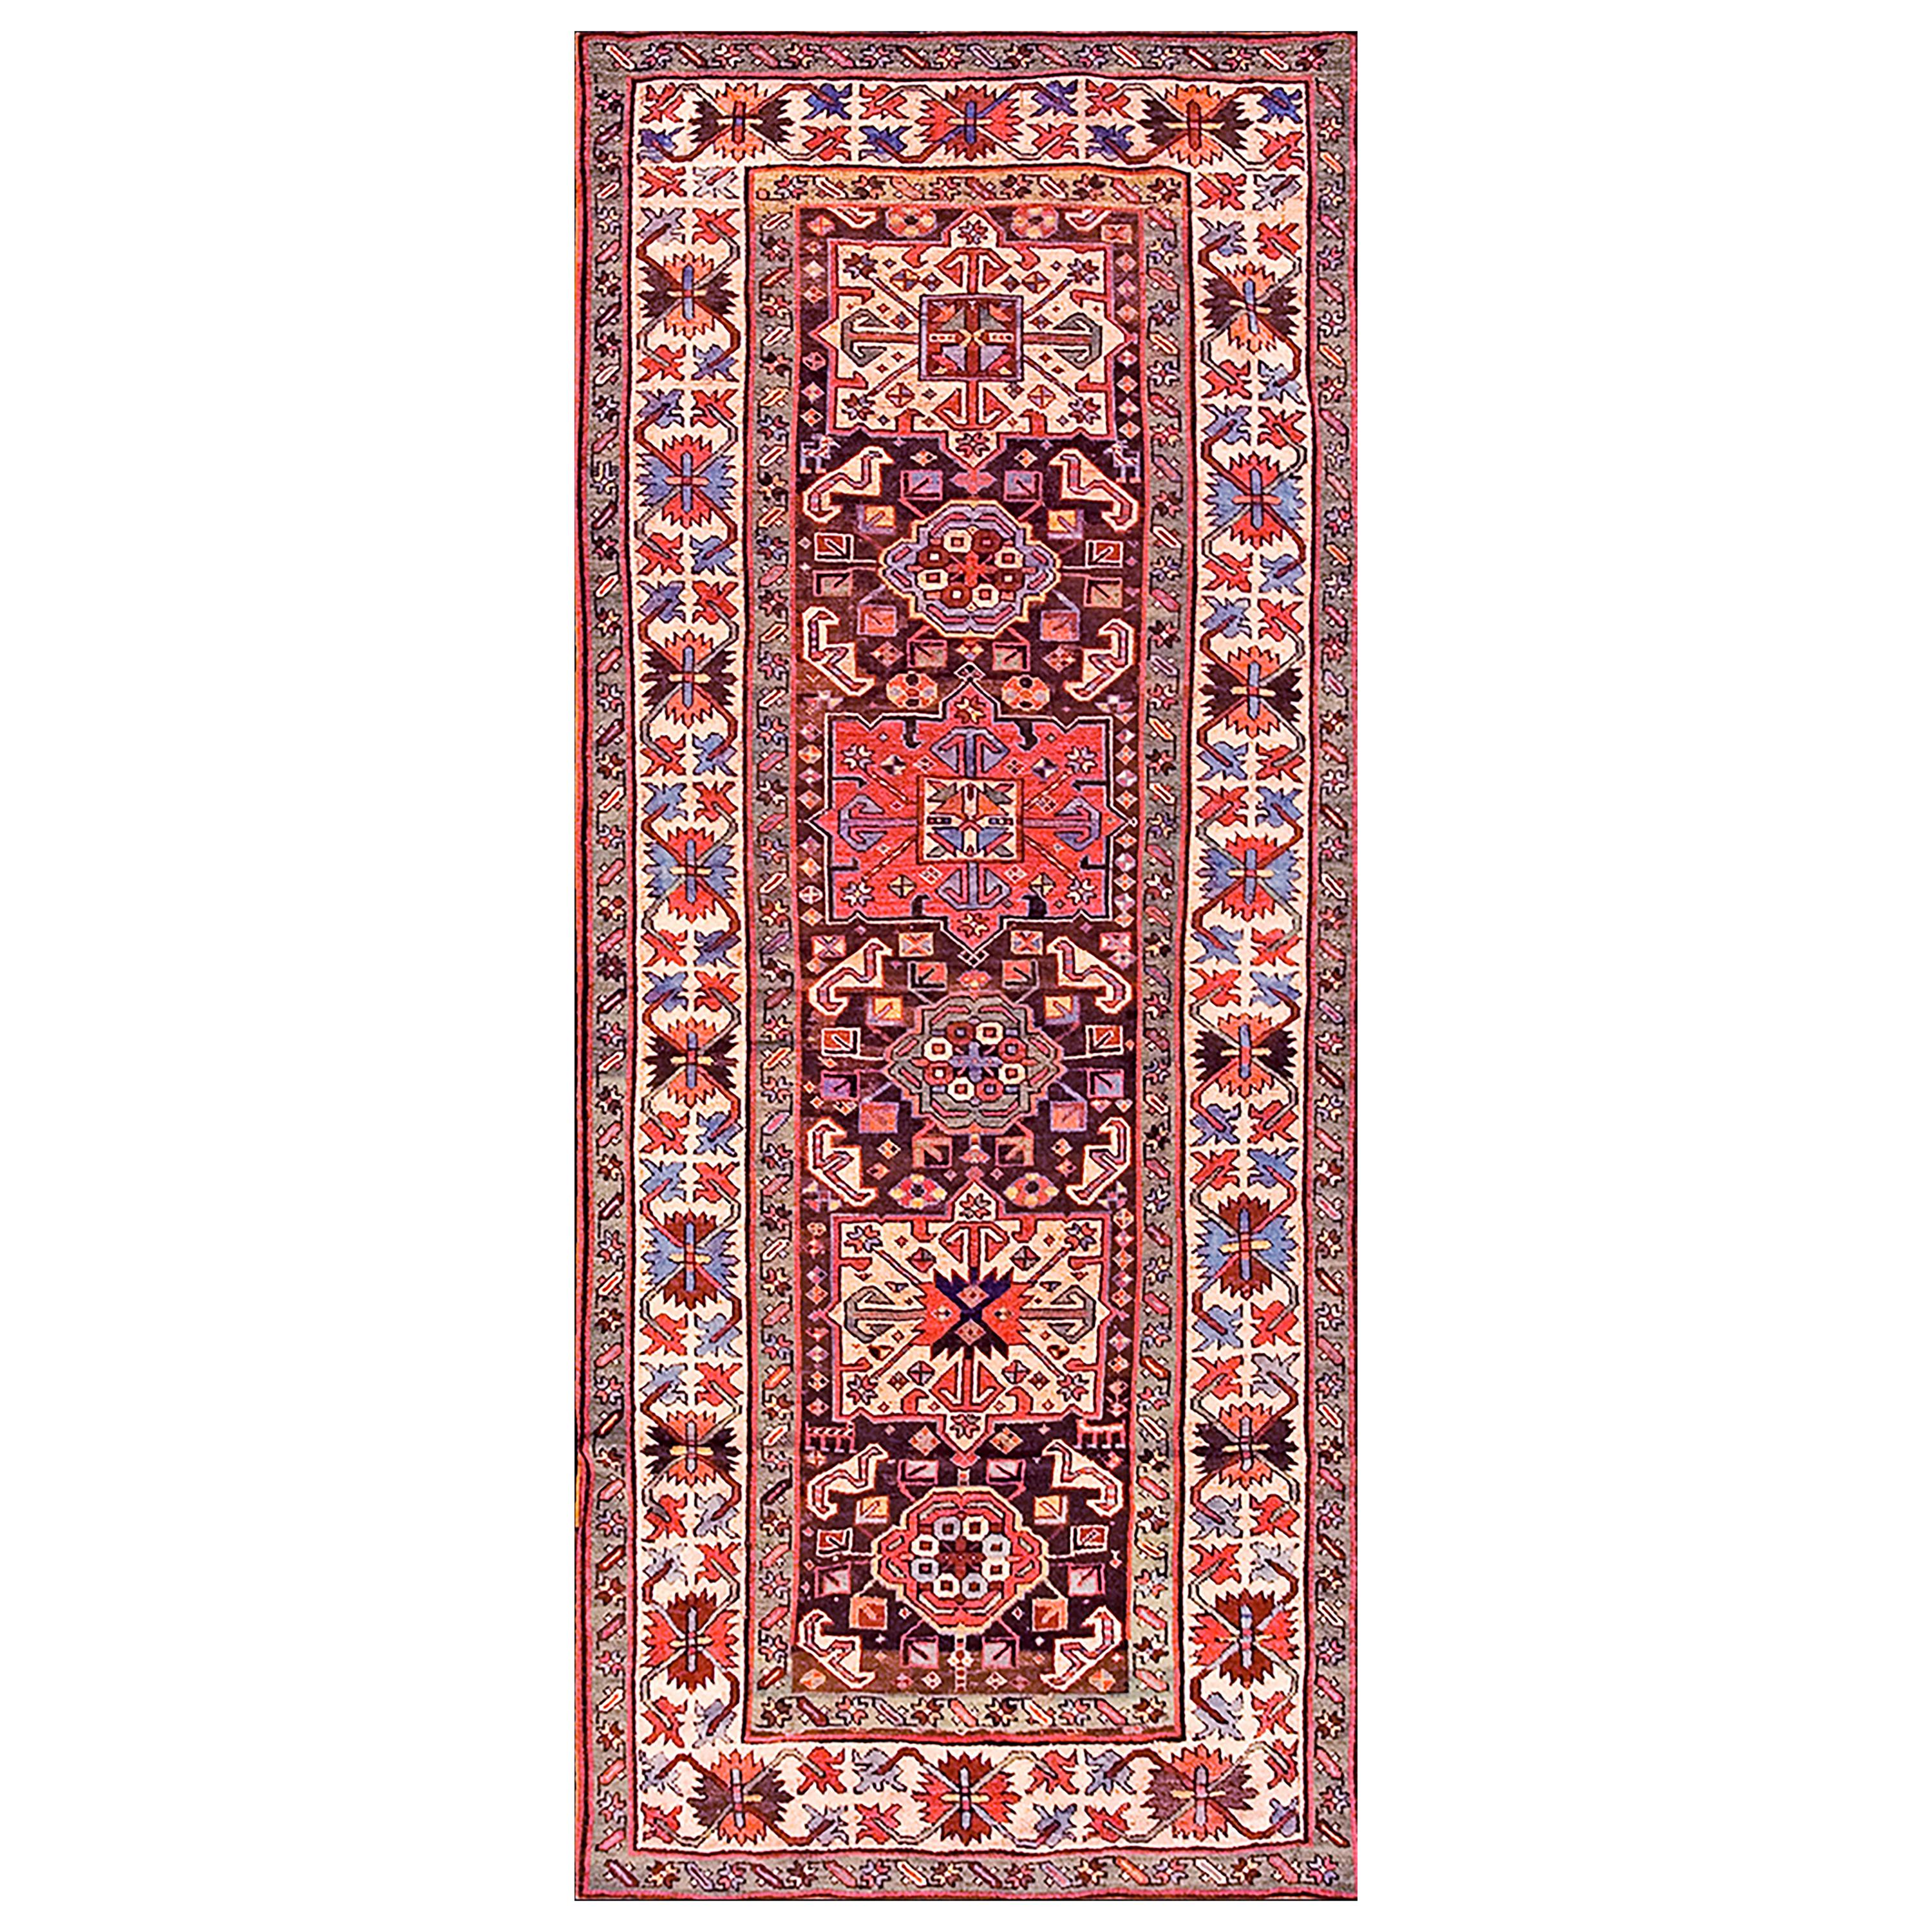 19th Century Caucasian Kazak Carpet ( 3'6" x 9'2" - 107 x 279 )